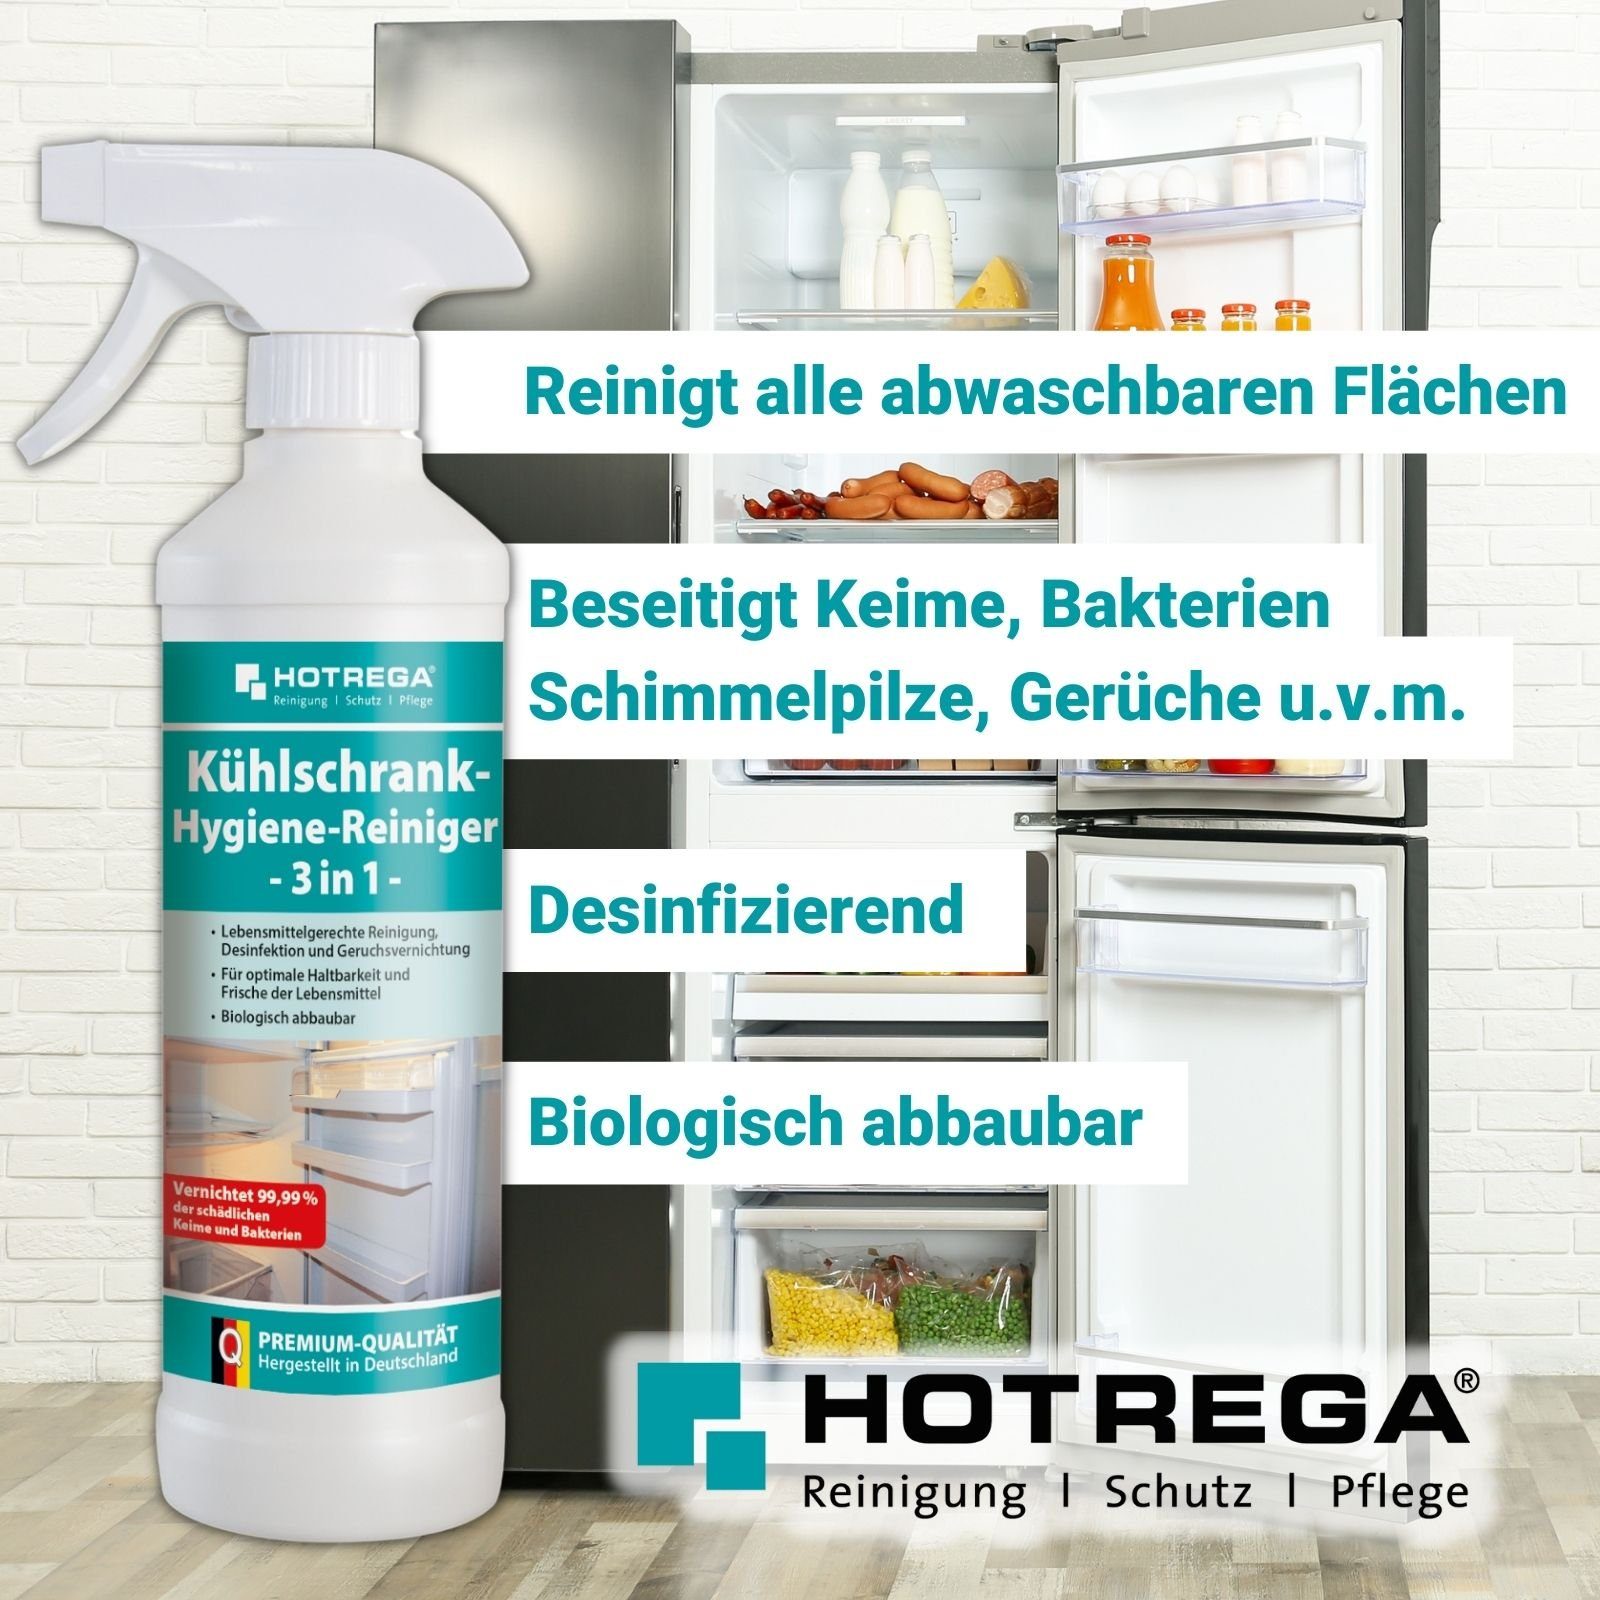 HOTREGA® Kühlschrank Hygiene Reiniger 3in1 Küchenreiniger Set 3-teilig